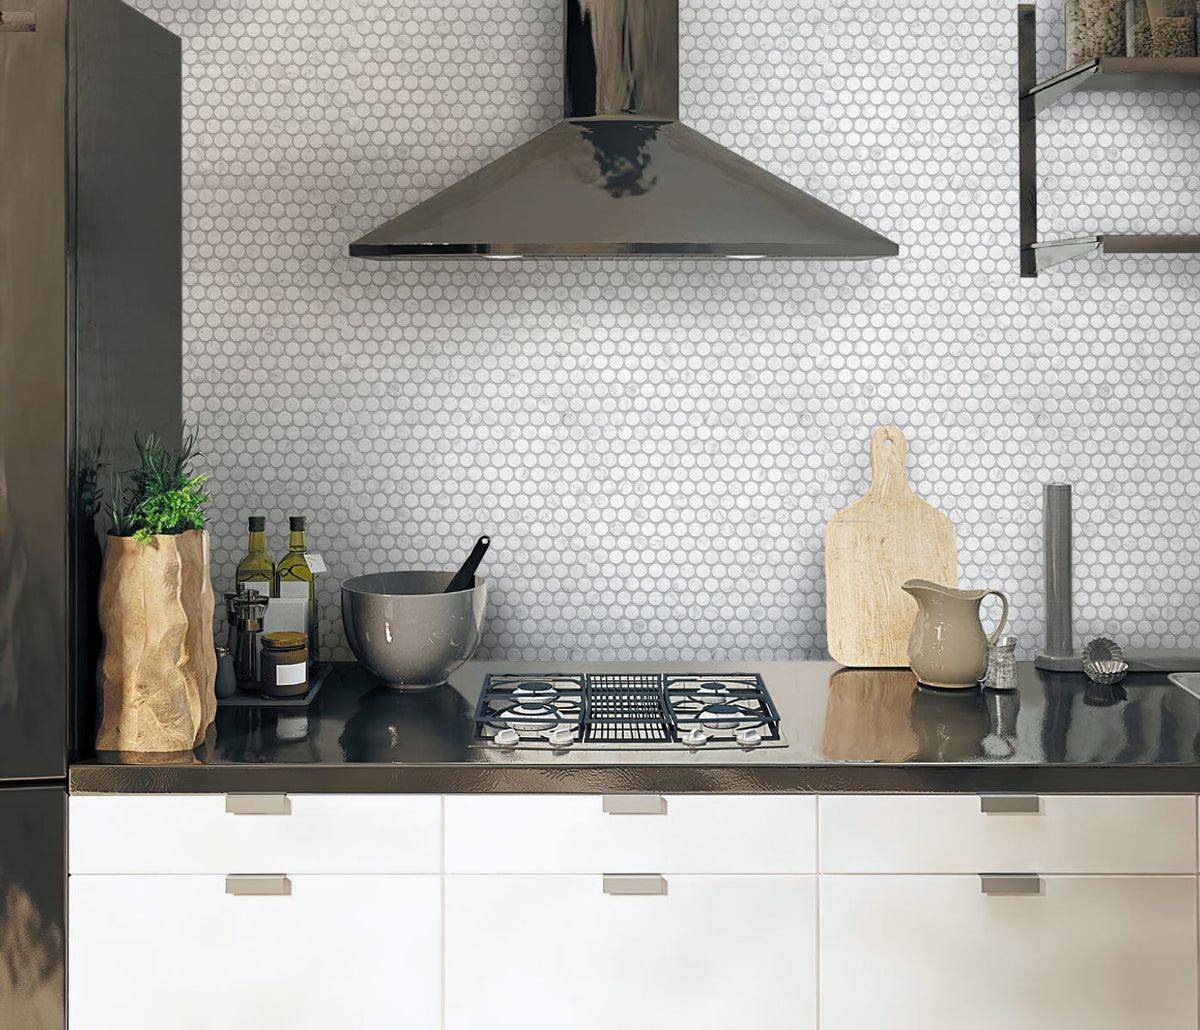 Bianco Carrara Penny Round Honed Marble Tile kitchen backsplash